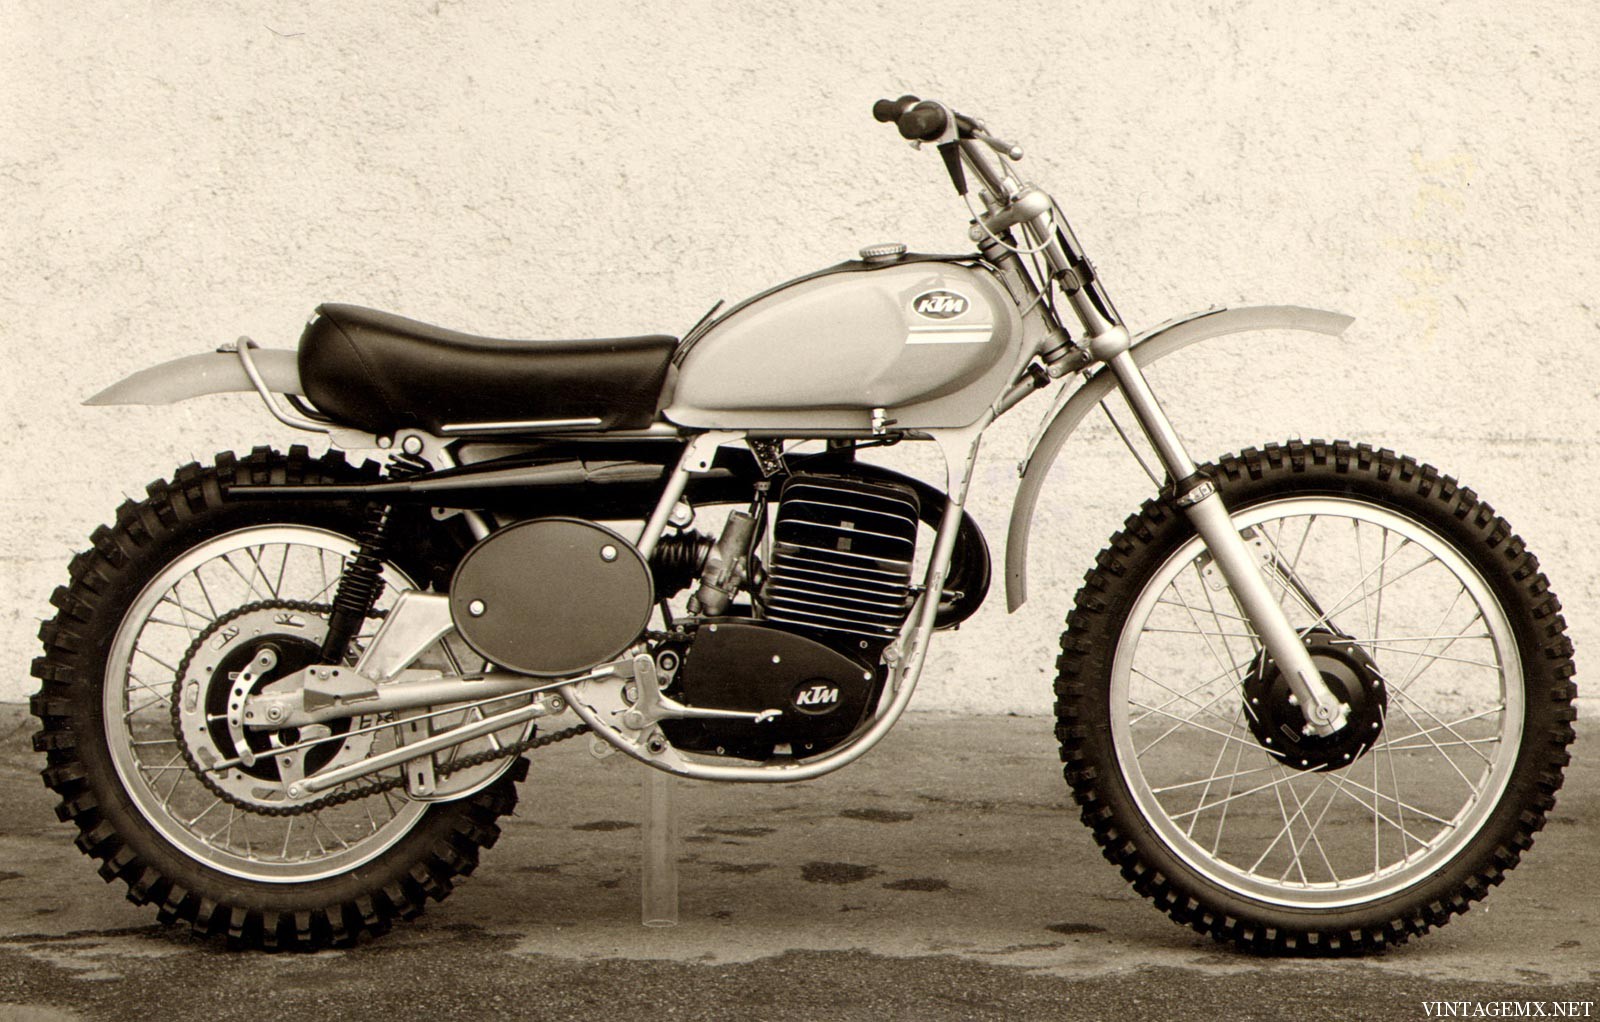 Vintage Ktm Motorcycles 89